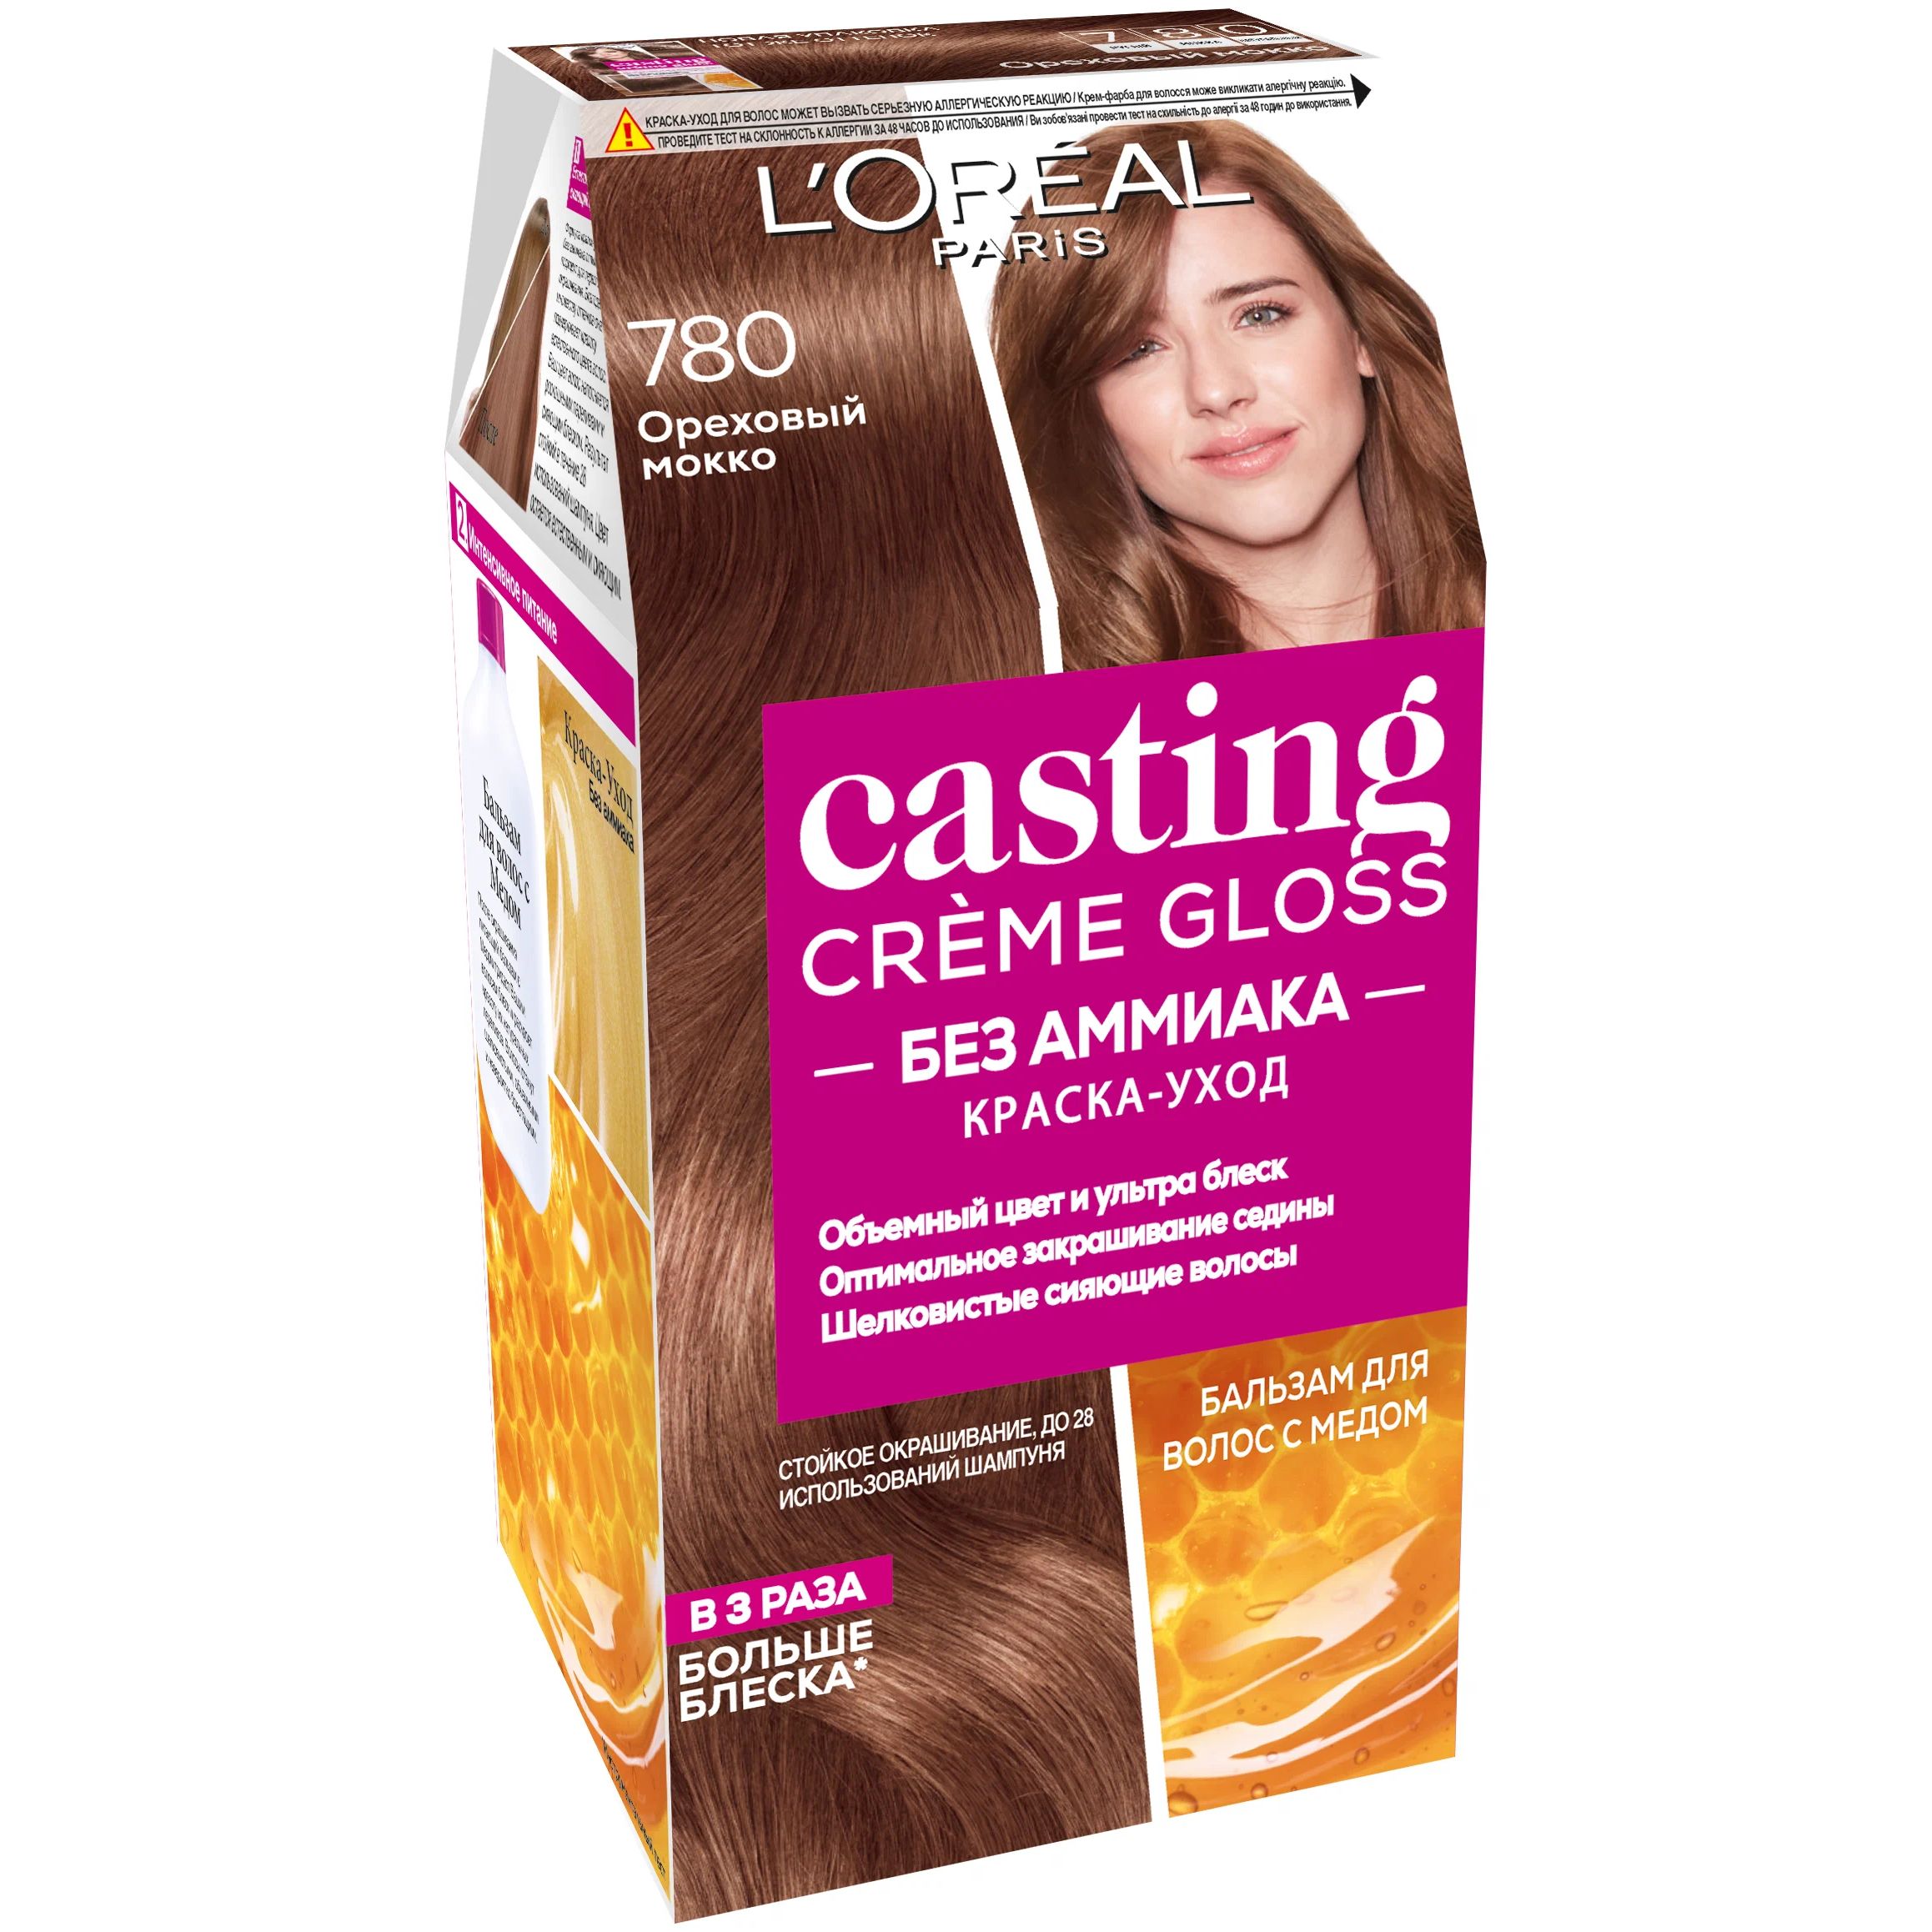 Краска-уход для волос L'Oreal Paris Casting Creme Gloss ореховый мокко, №780, 183 мл крем шелк для укрощения вьющихся волос curl control silkening creme